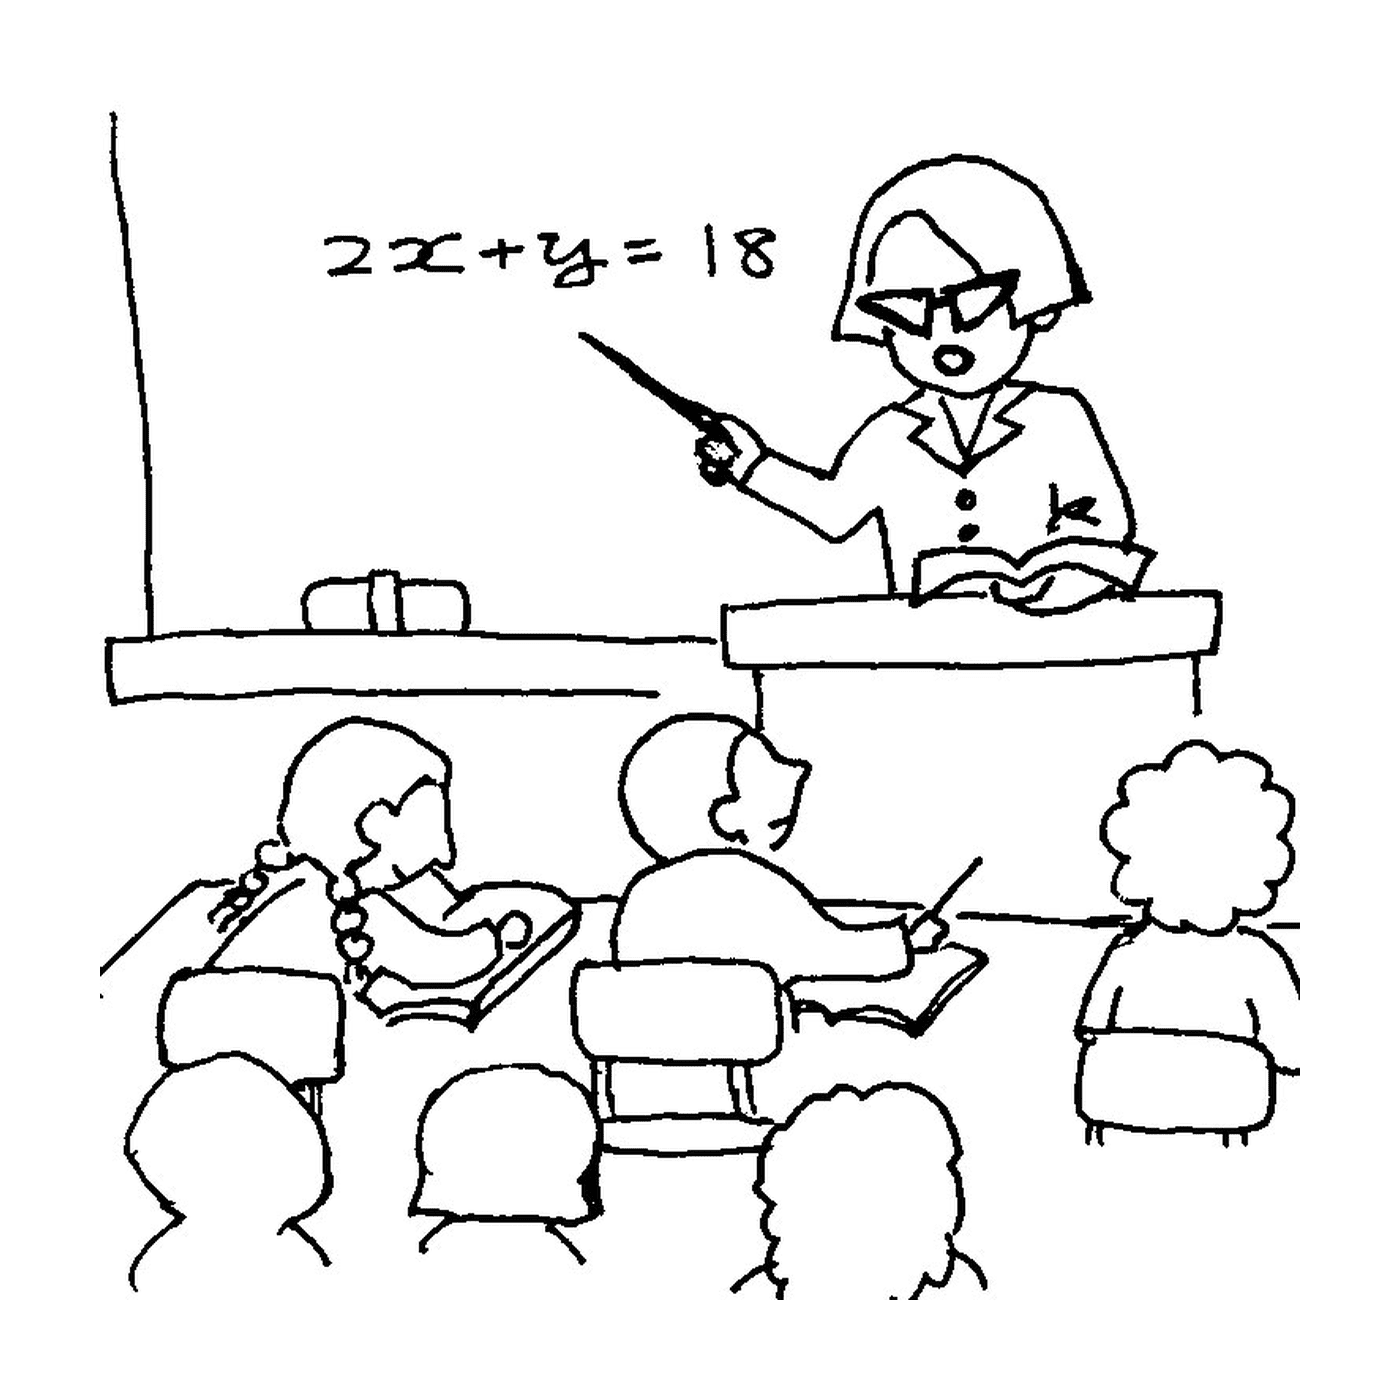  स्त्री एक समूह को वर्ग दे रही है 